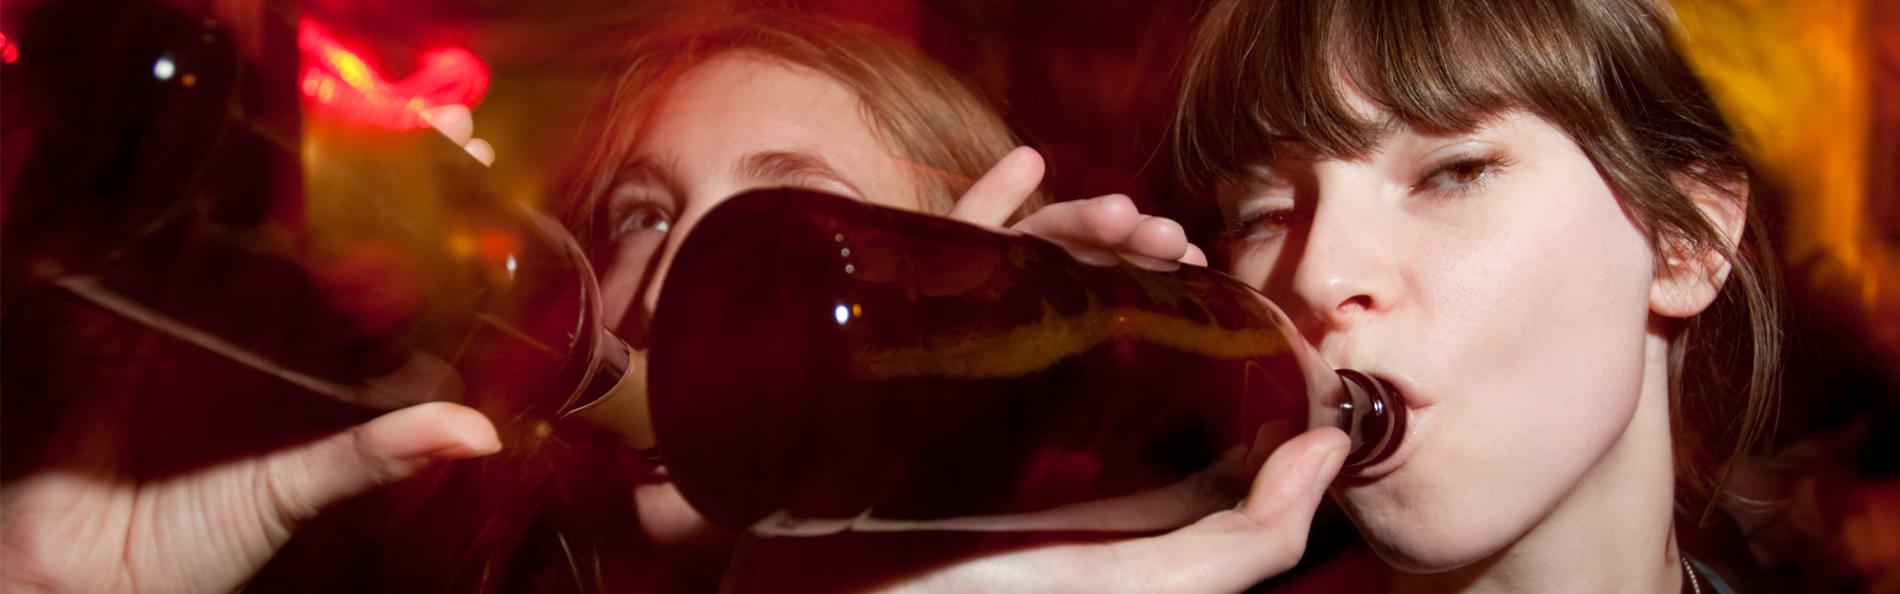 Zwei junge Frauen trinken auf einer Party aus braunen Flaschen